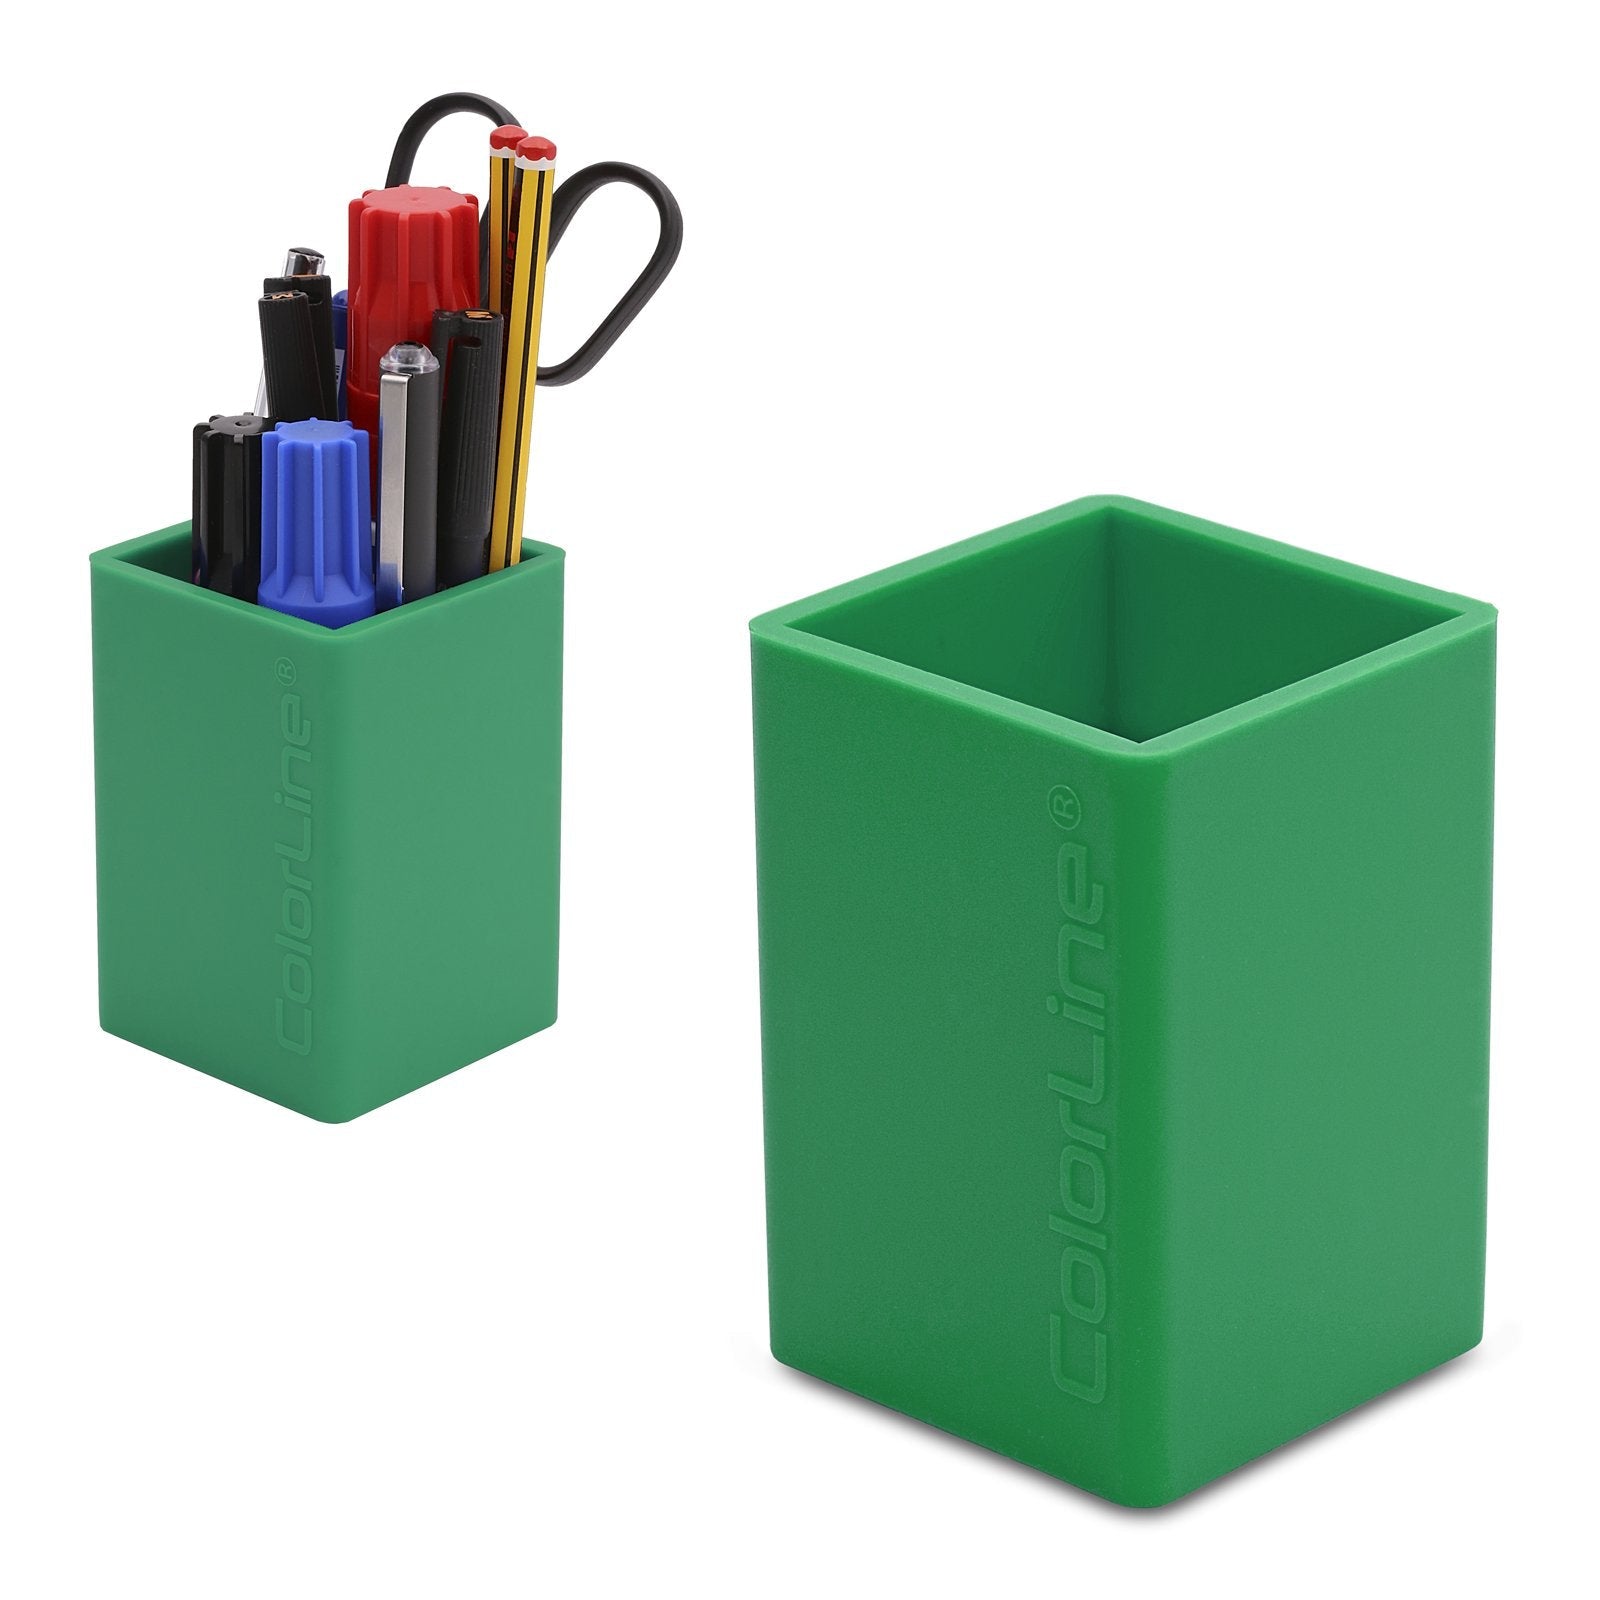 COLORLINE - Cubilete Porta Lápices Cuadrado en Silicona Ultra Suave. Verde Oscuro